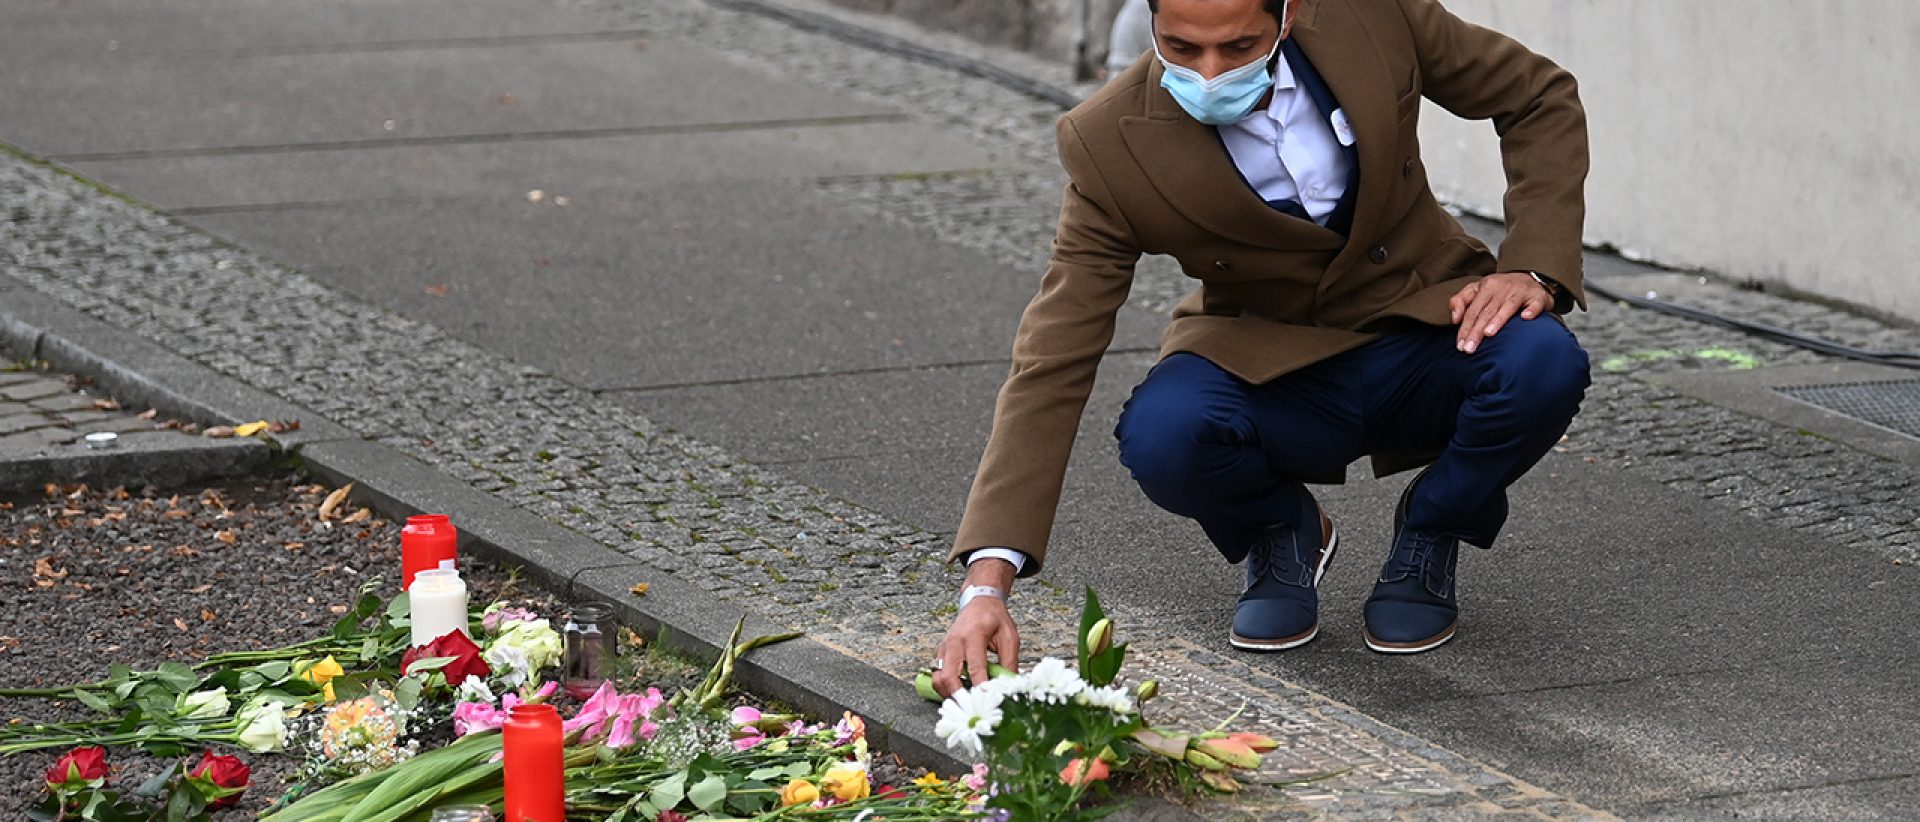 Ismet Tekin, Betreiber des Kiez Döners, legt vor seinem Imbiss Blumen an einer Gedenkplatte für die Opfer des Anschlages von Halle nieder